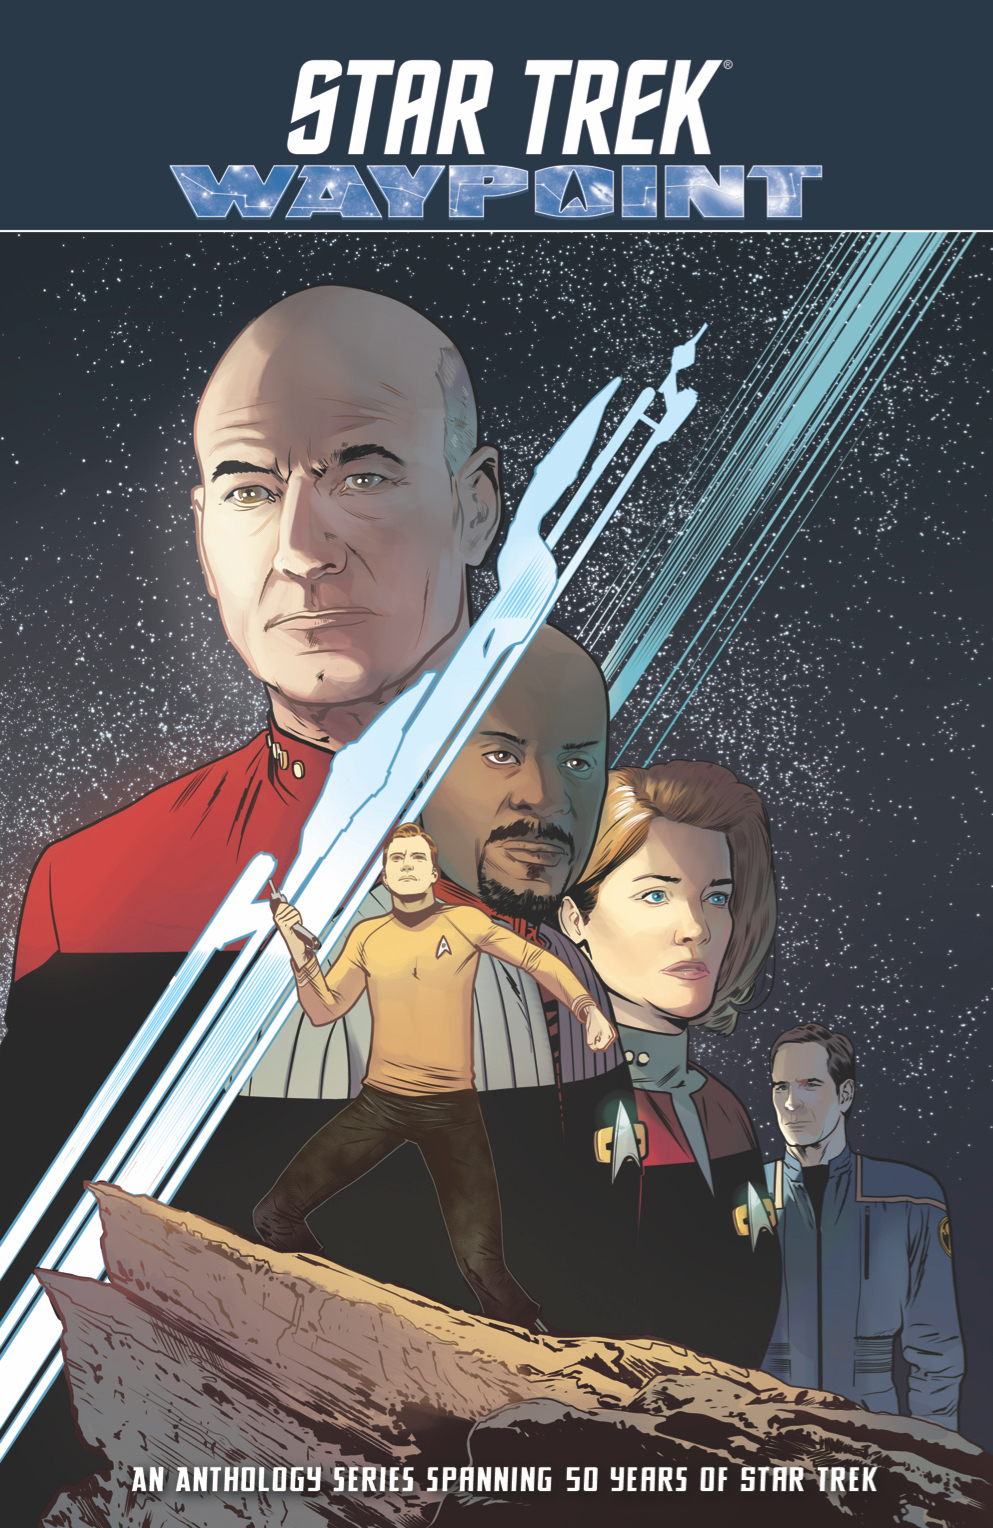 Star Trek Waypoint Graphic Novel